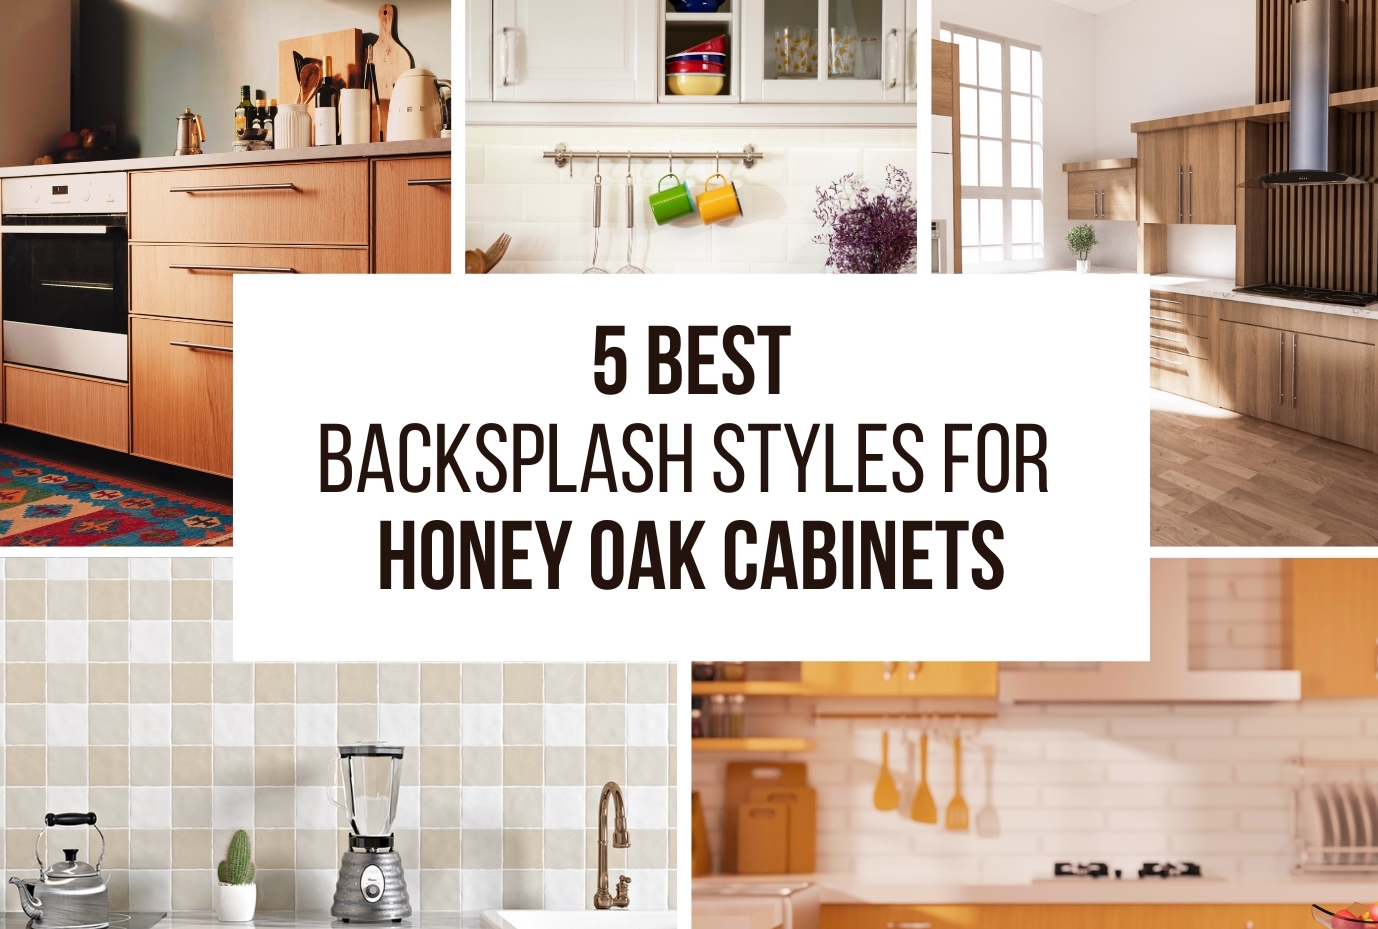 5 Best Backsplash Styles For Honey Oak